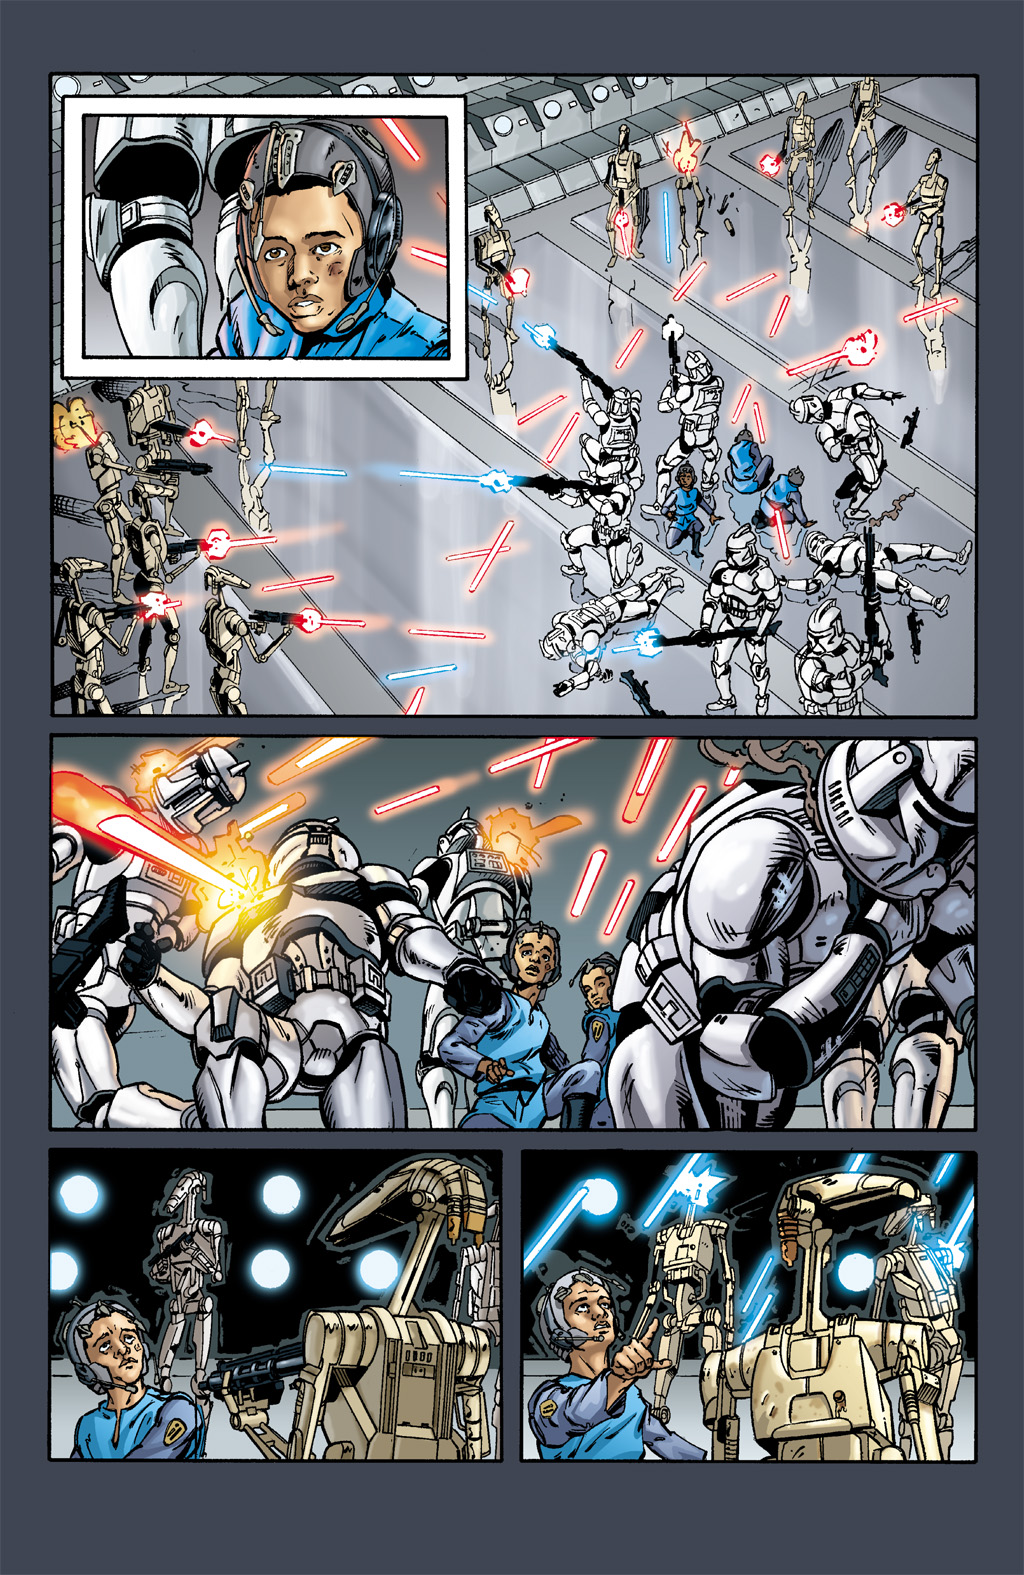 Read online Star Wars: Clone Wars comic -  Issue # TPB 1 - 52